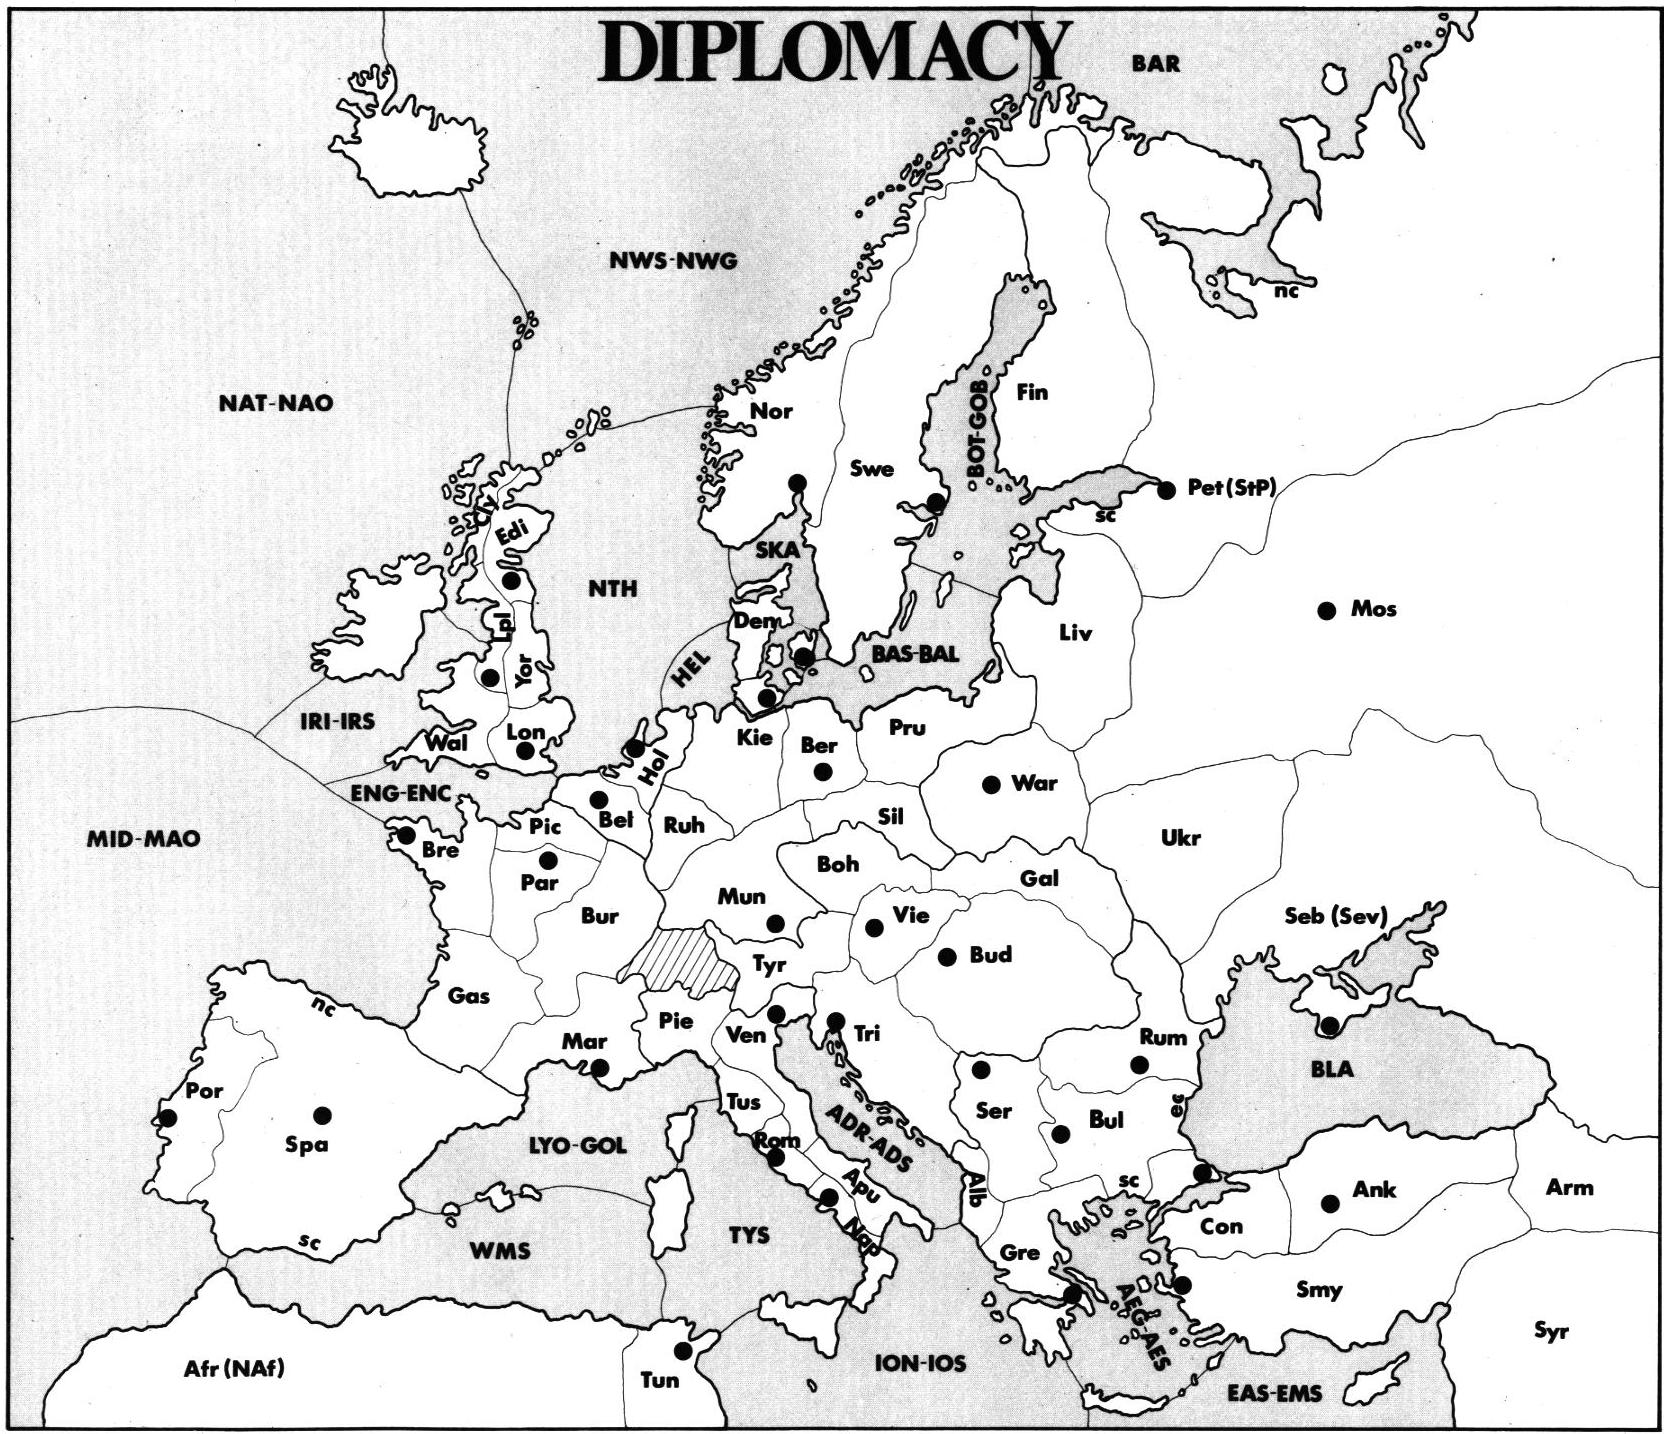 andreas seier - online-diplomacy